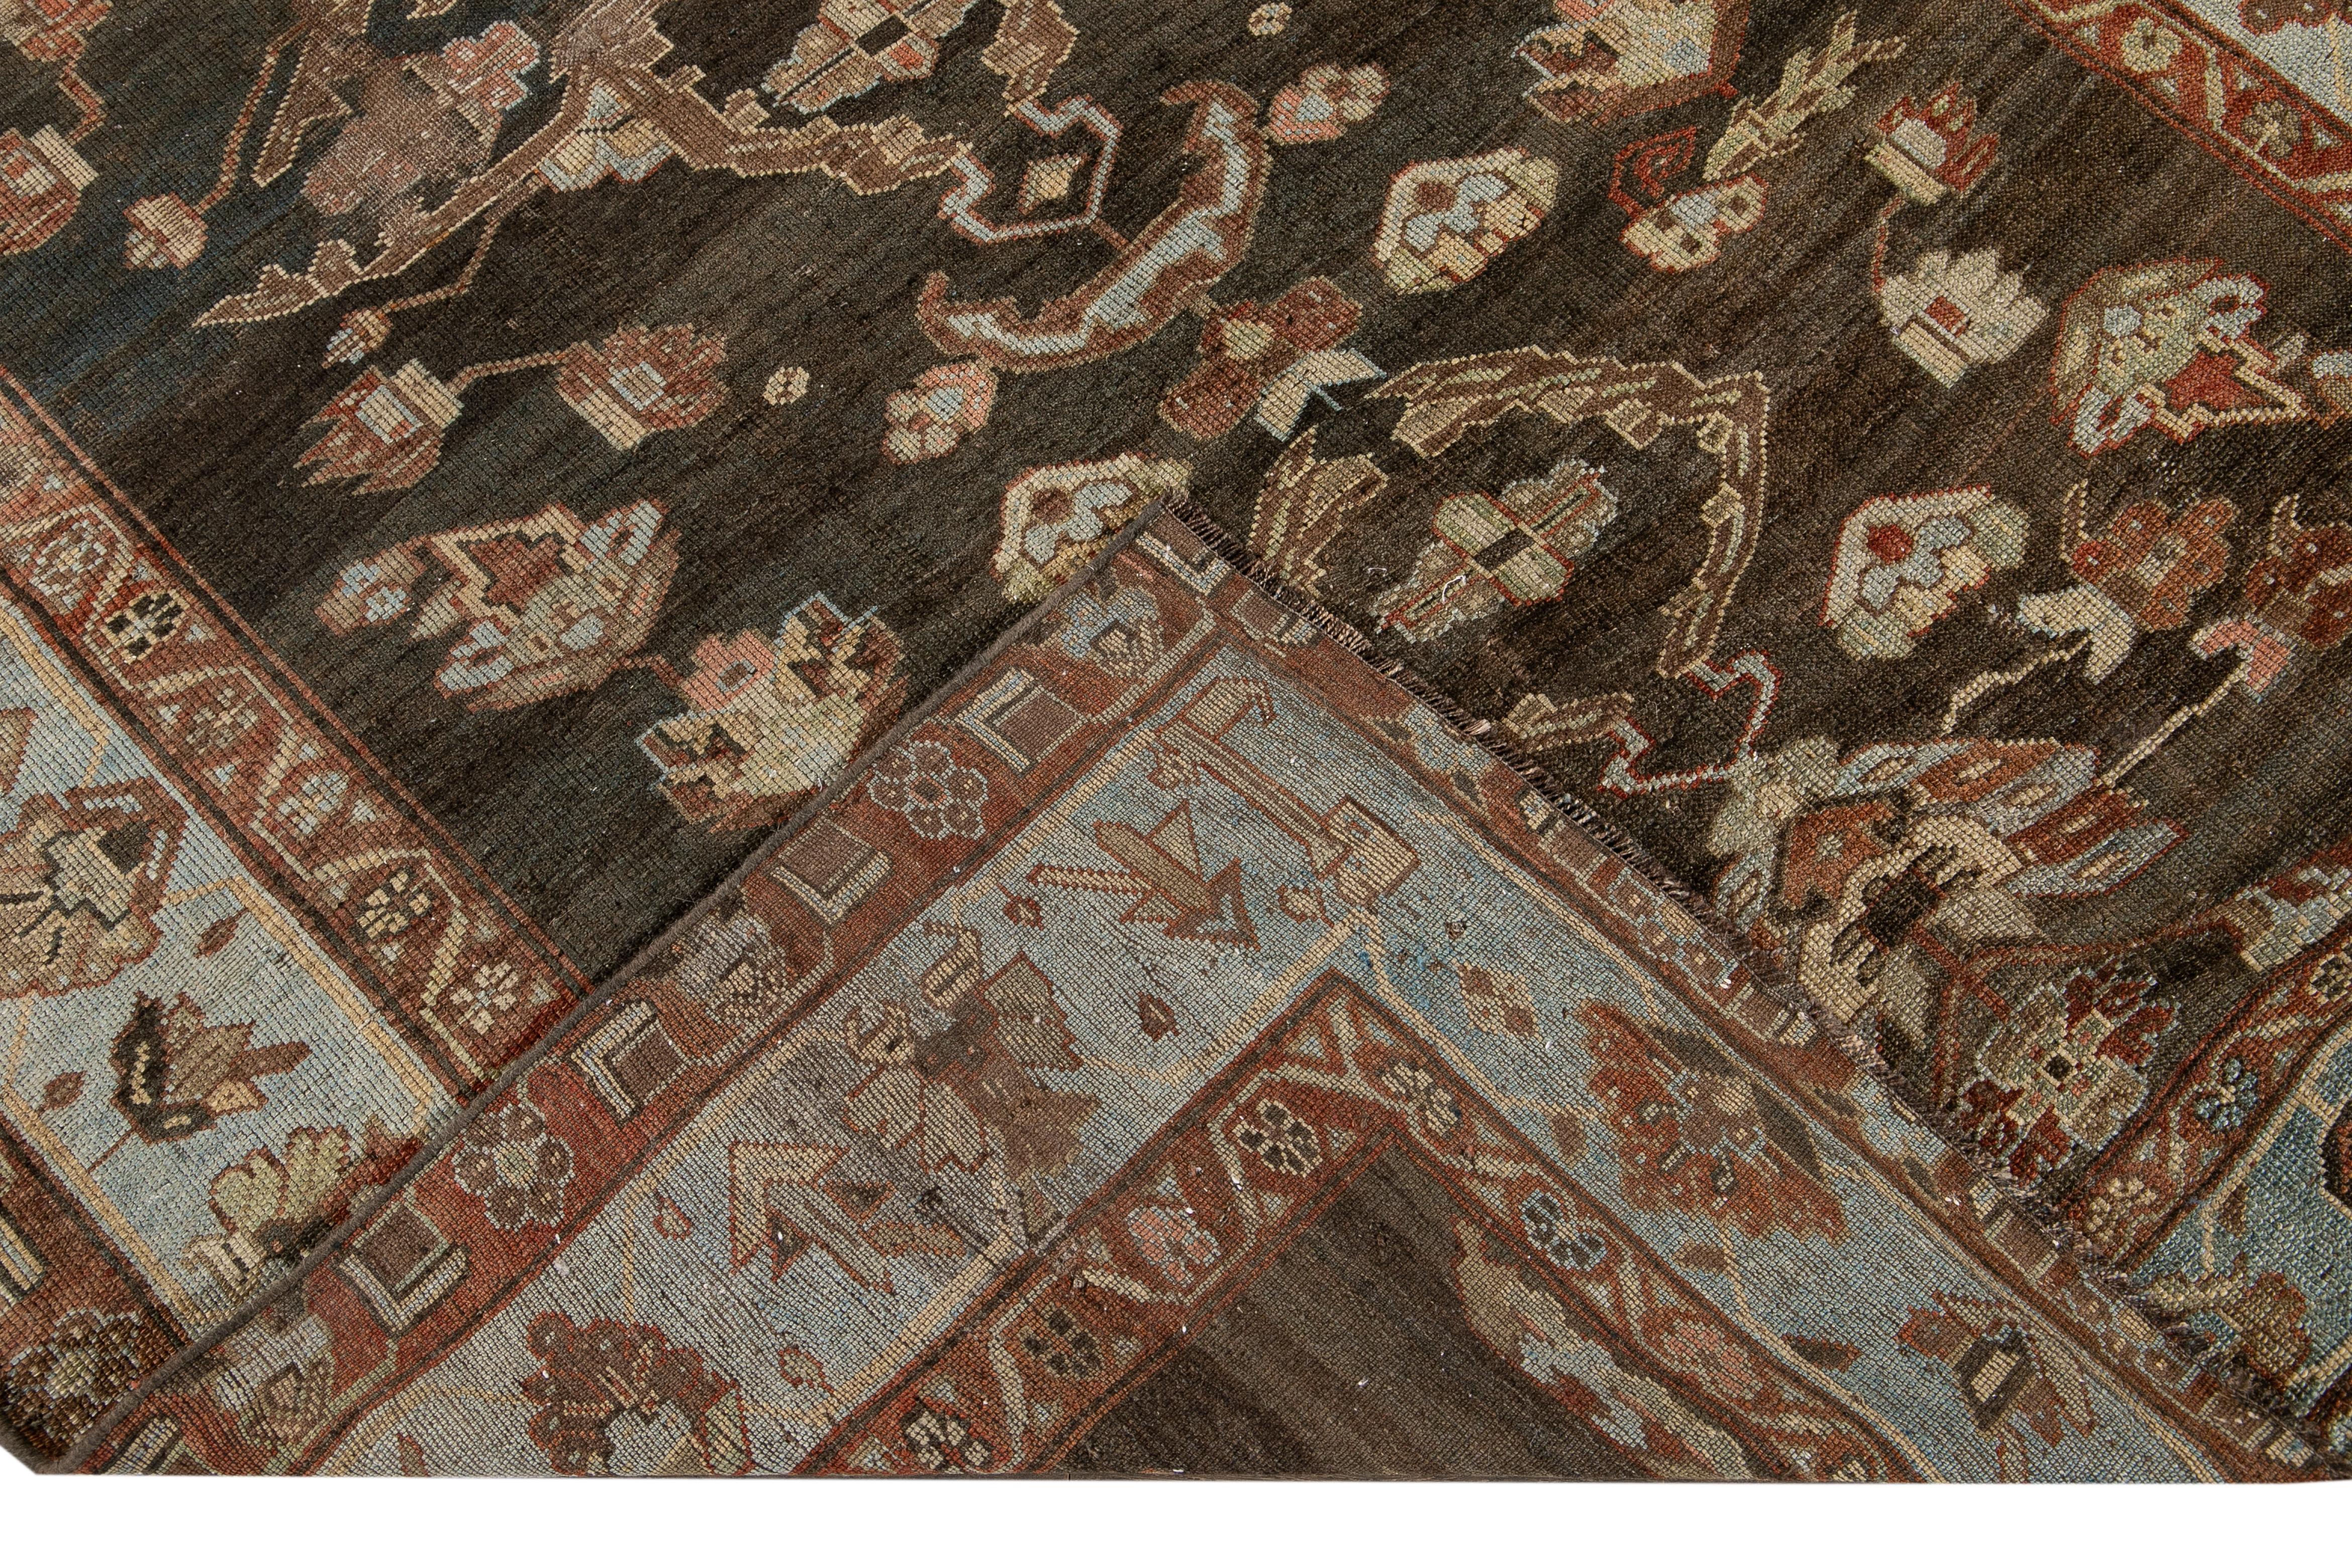 Wunderschöner antiker Bidjar-Teppich aus handgeknüpfter Wolle mit braunem Feld. Dieser Bidjar-Teppich hat einen hellblauen Rahmen mit braunen, beigen und rostfarbenen Akzenten in einem prächtigen floralen All-Over-Medaillon-Design.

Dieser Teppich